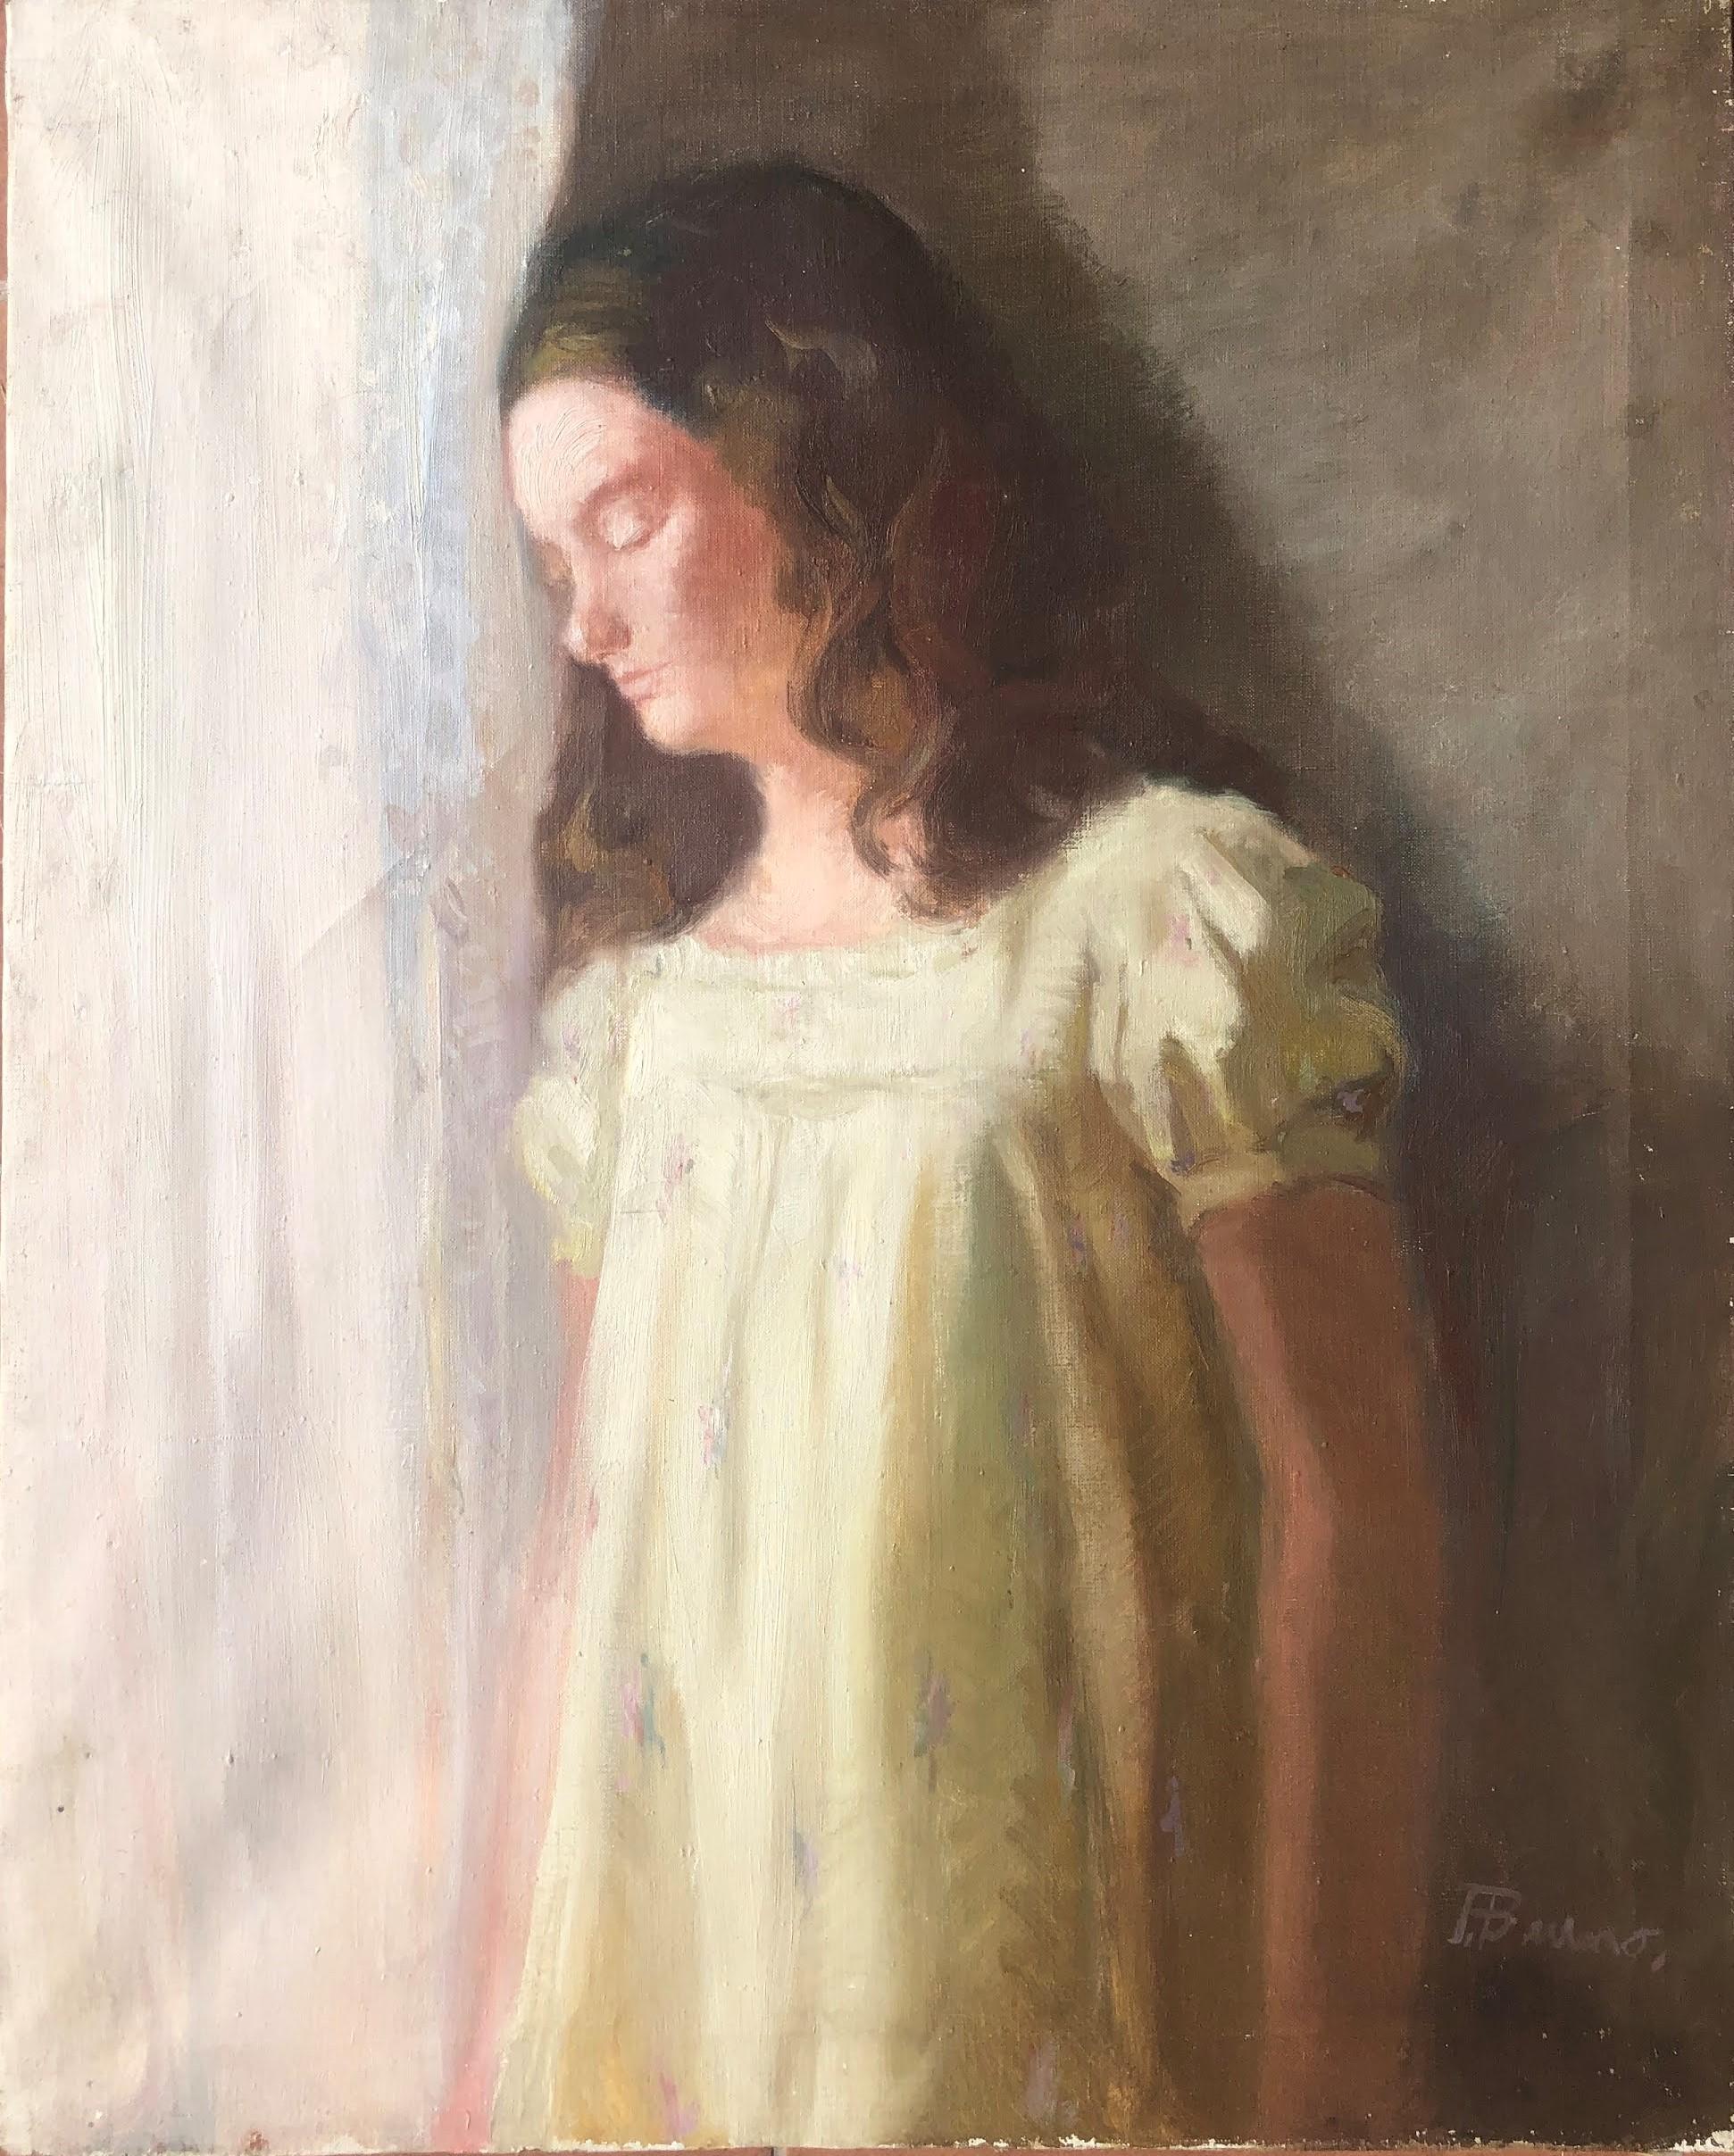 Pascual Bueno Ferrer Portrait Painting - Female portrait melancholia oil on canvas painting